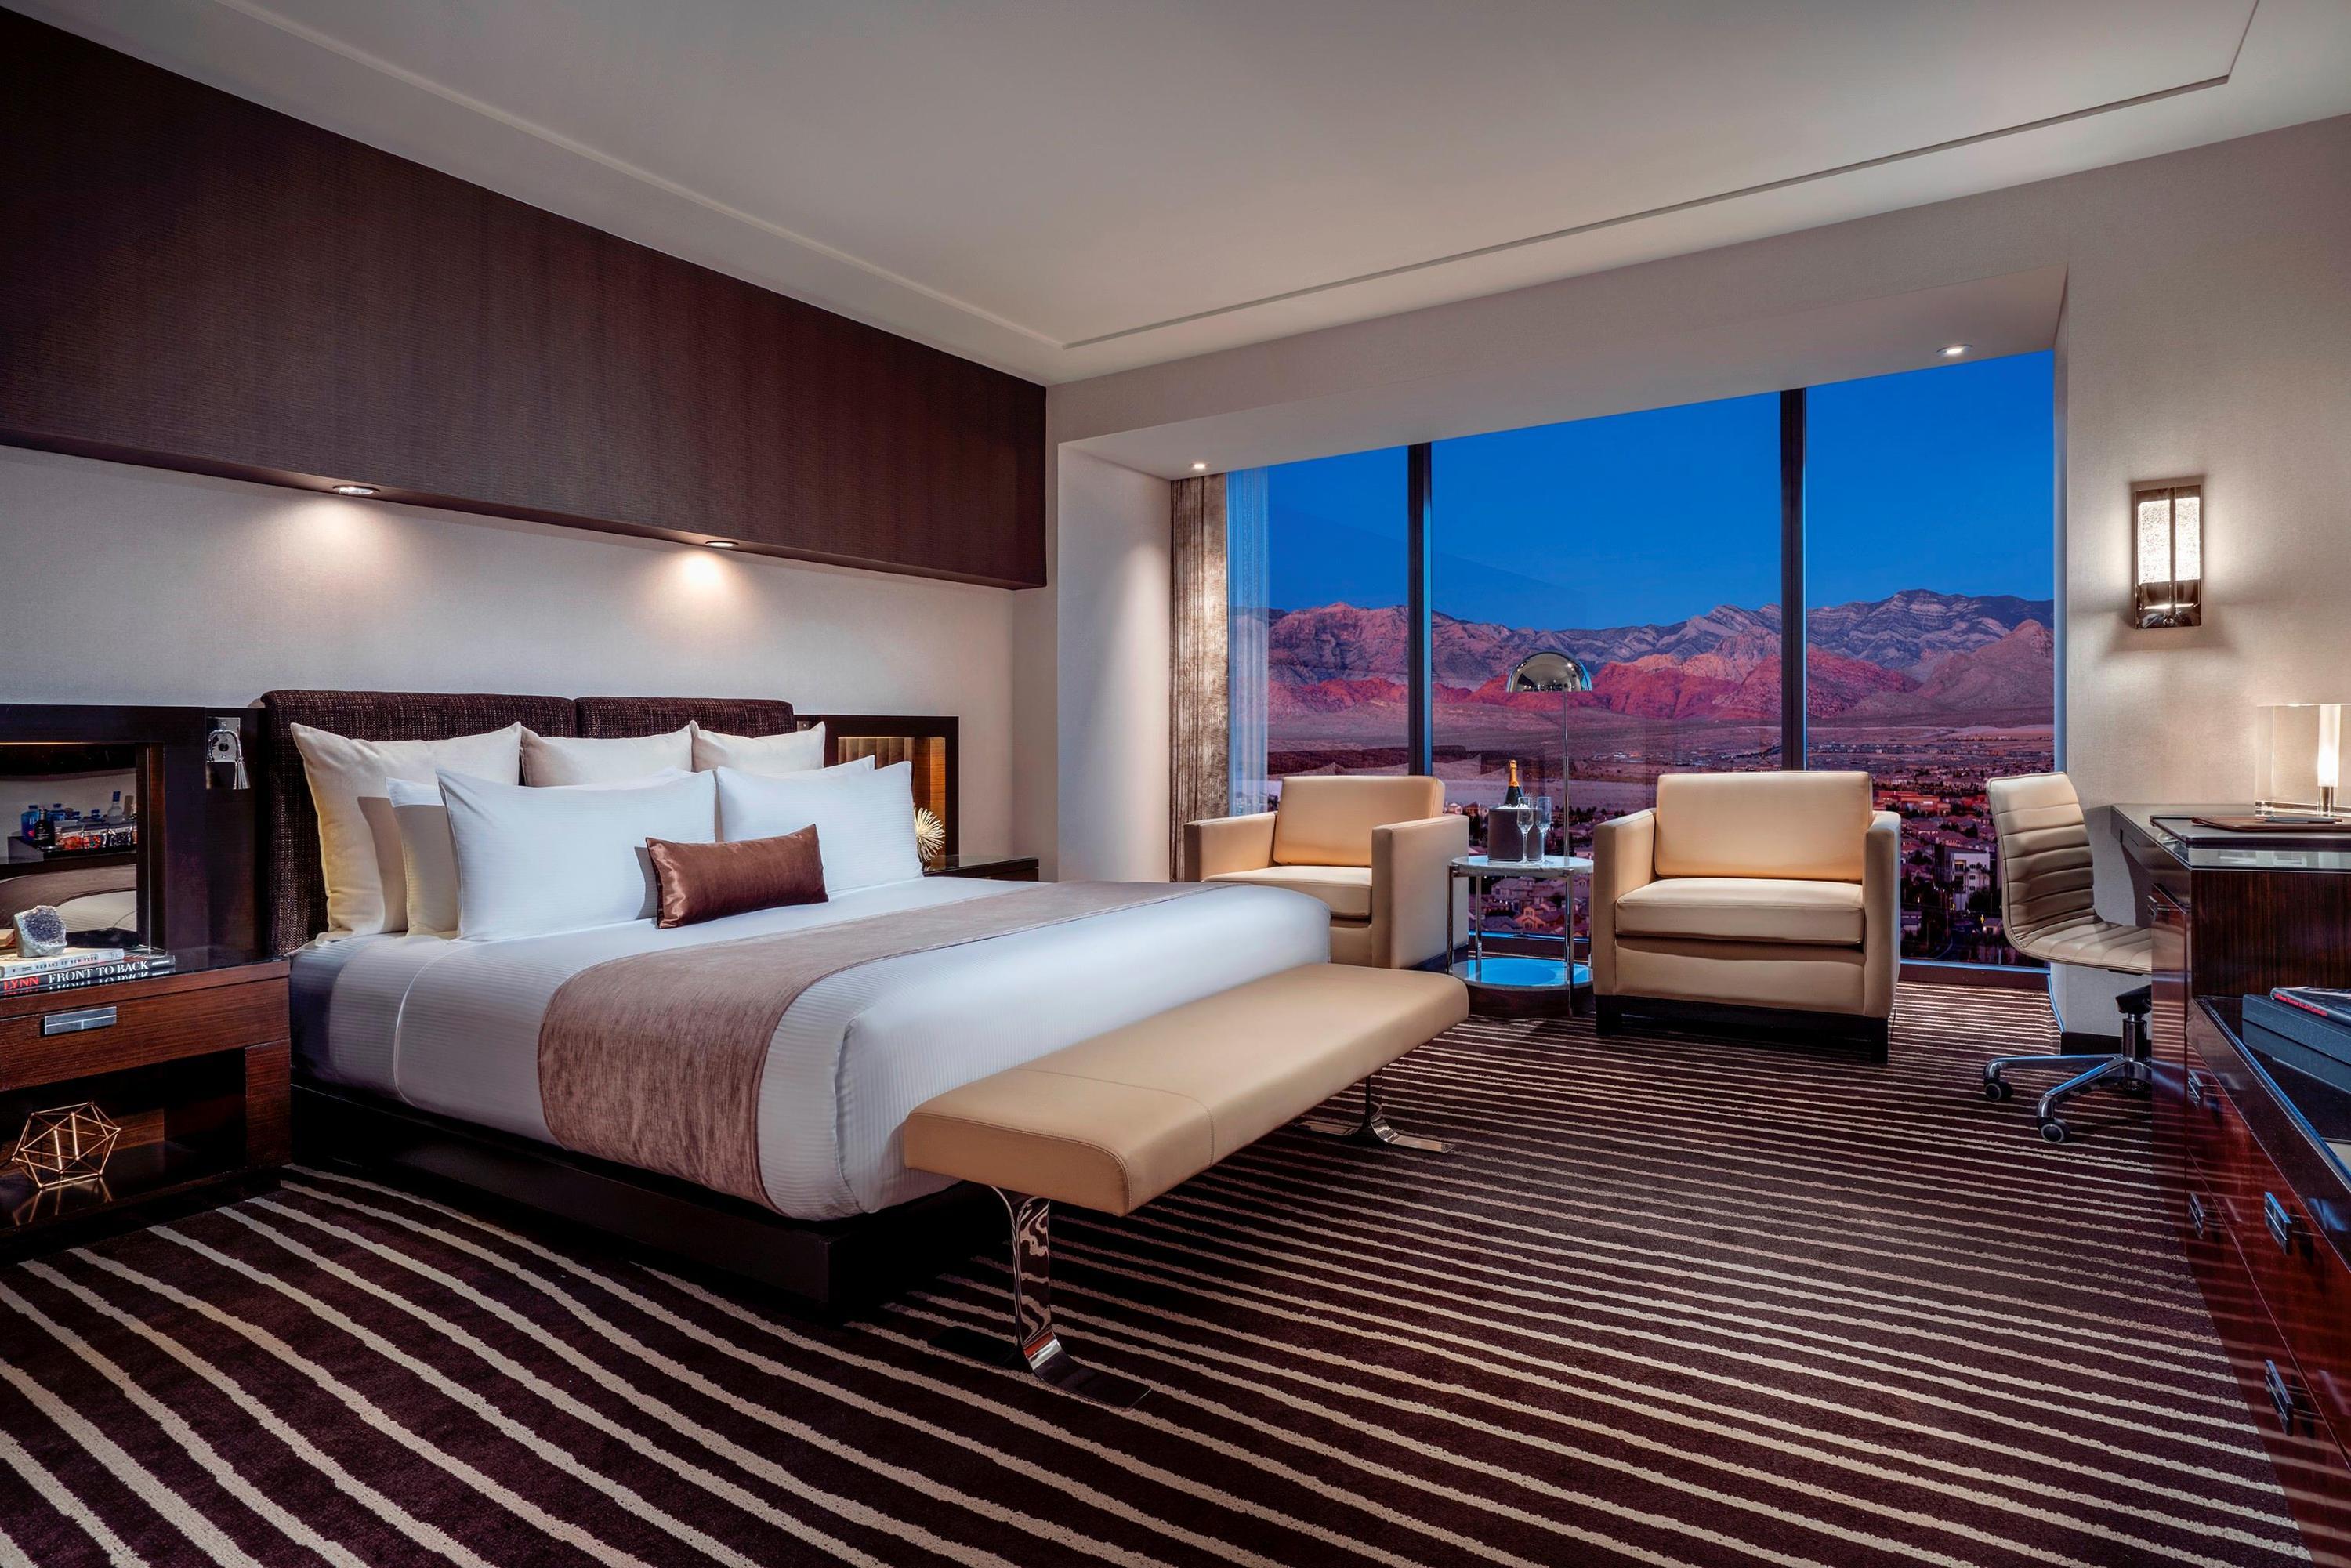 La Quinta Inn Ste Red Rock - Las Vegas - HOTEL INFO